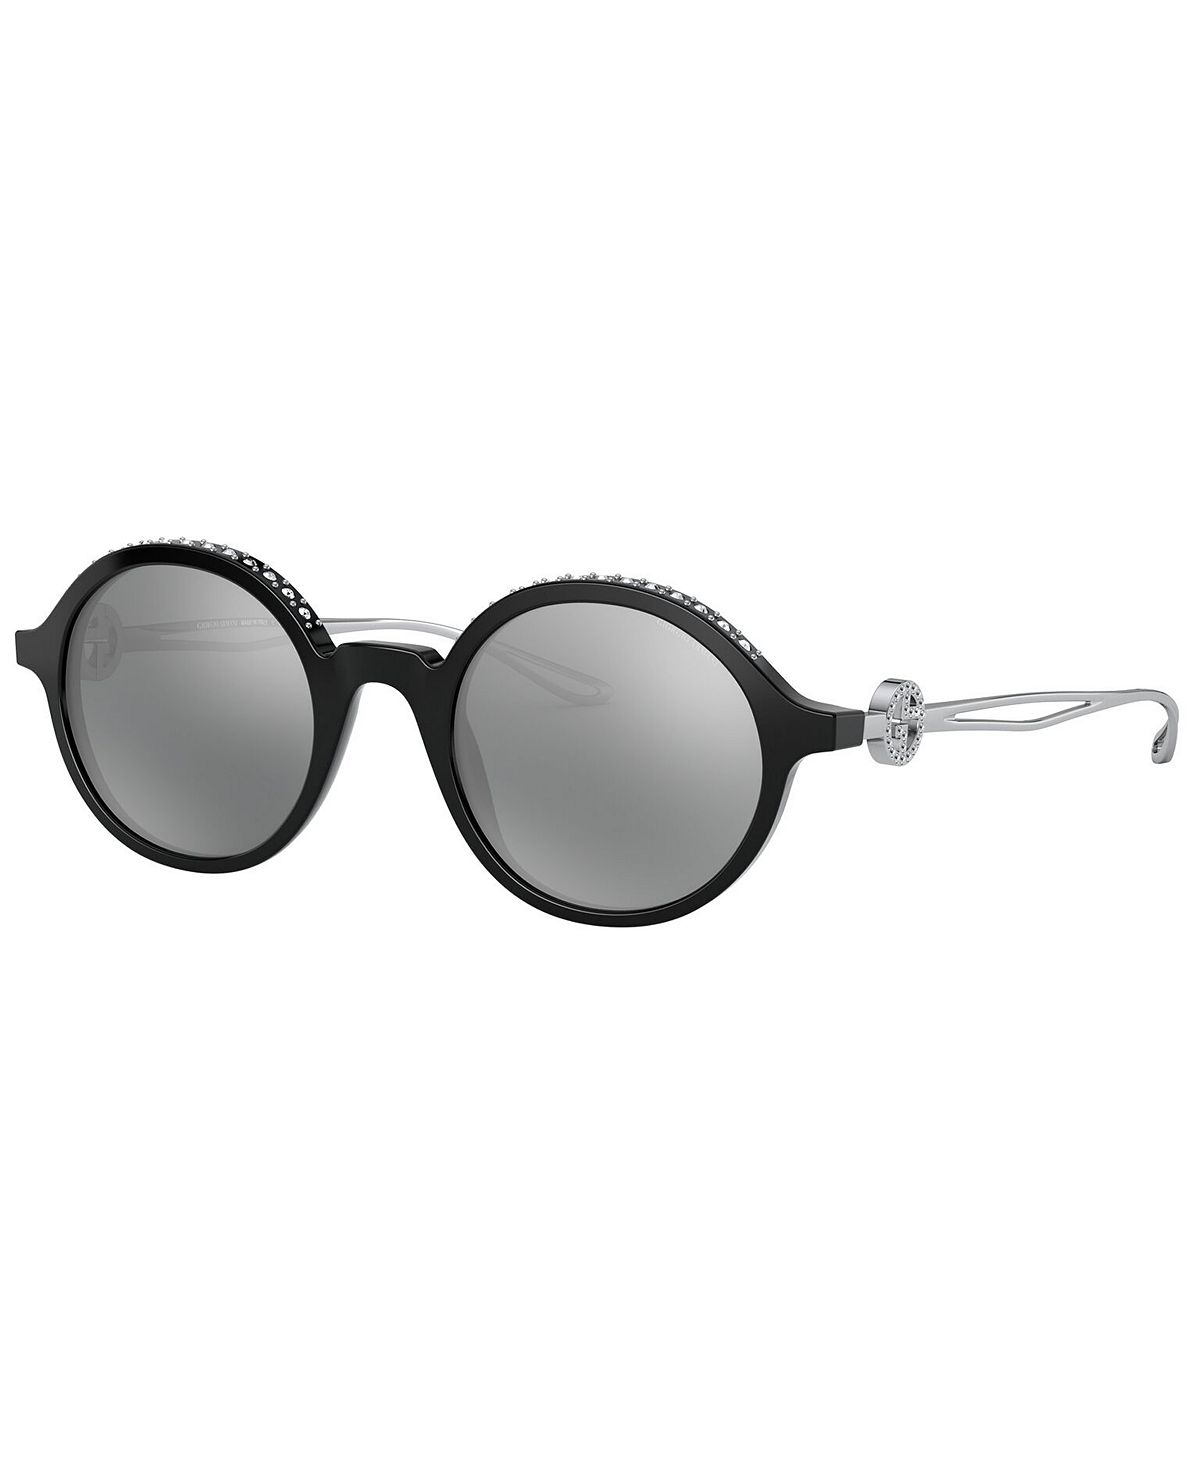 Женские солнцезащитные очки Giorgio Armani stone 5 6 5x15 5x118 d71 1 et65 black mirror